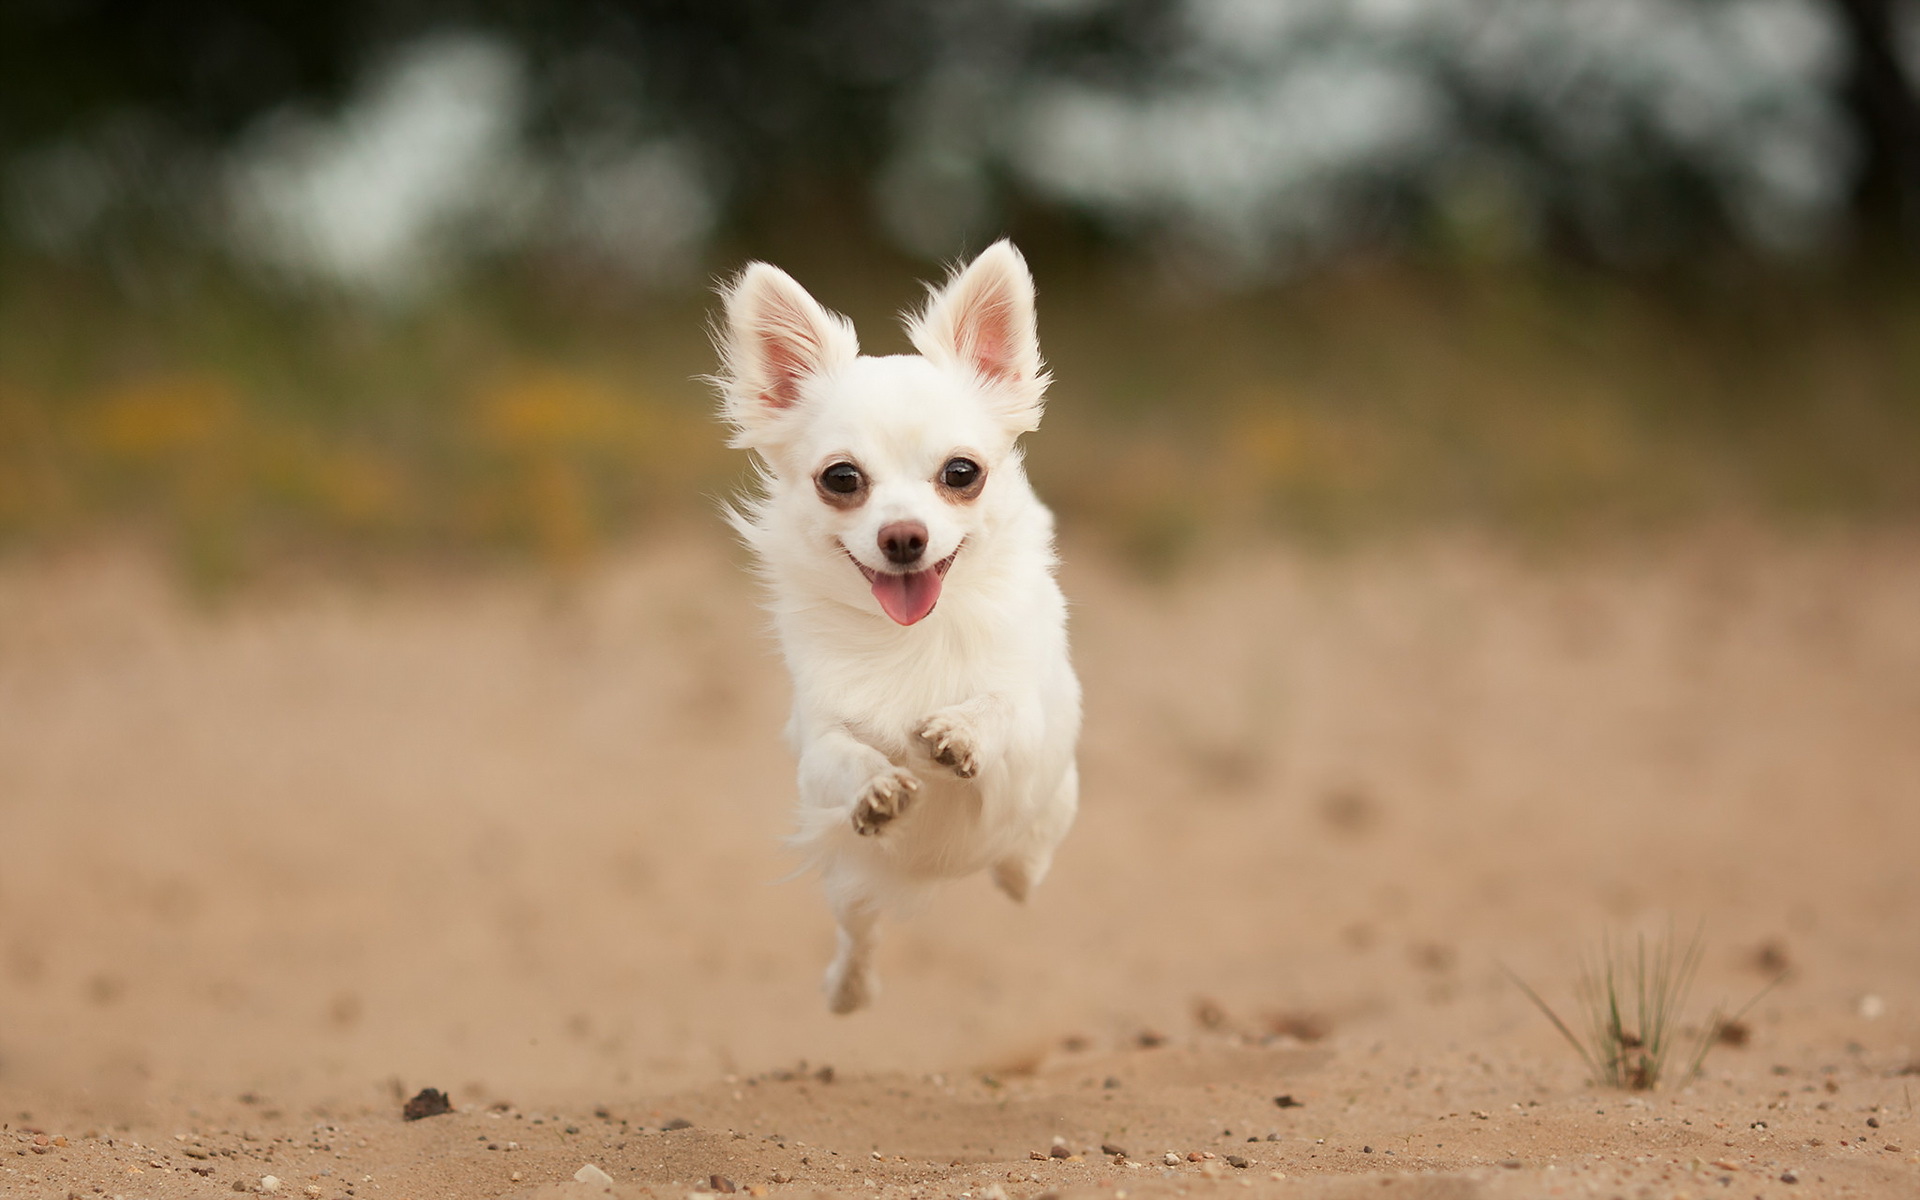 Dogs_Chihuahua_Jump_Run_453261.jpg